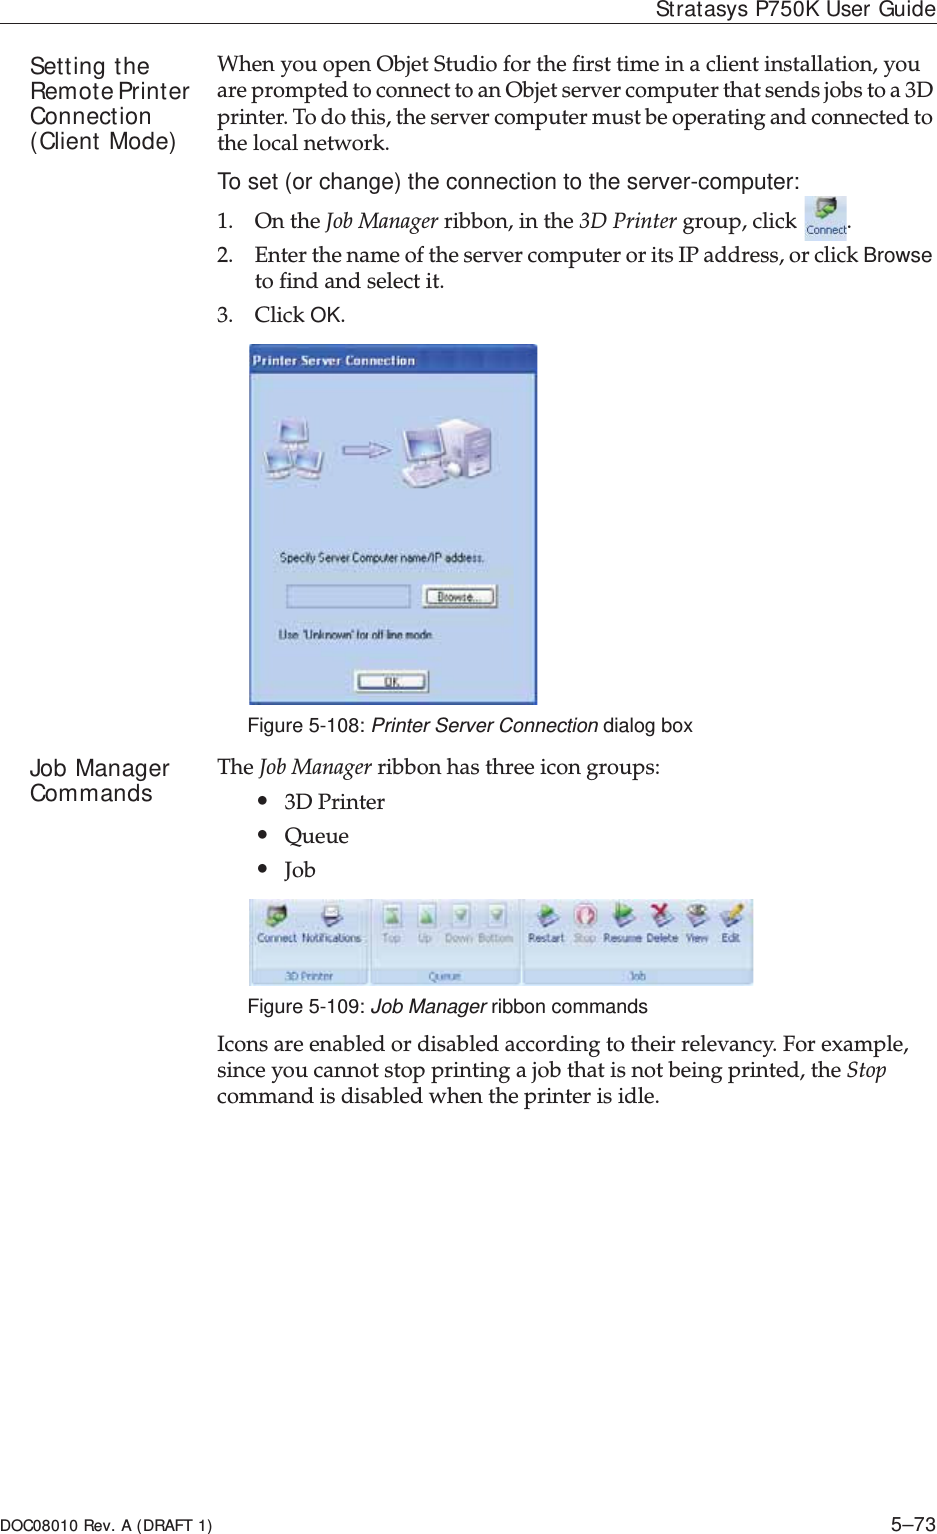 DOC08010 Rev. A (DRAFT 1) 5–73Stratasys P750K User GuideSetting the Remote Printer Connection (Client Mode)WhenȱyouȱopenȱObjetȱStudioȱforȱtheȱfirstȱtimeȱinȱaȱclientȱinstallation,ȱyouȱareȱpromptedȱtoȱconnectȱtoȱanȱObjetȱserverȱcomputerȱthatȱsendsȱjobsȱtoȱaȱ3Dȱprinter.ȱToȱdoȱthis,ȱtheȱserverȱcomputerȱmustȱbeȱoperatingȱandȱconnectedȱtoȱtheȱlocalȱnetwork.ȱTo set (or change) the connection to the server-computer:1. OnȱtheȱJobȱManagerȱribbon,ȱinȱtheȱ3DȱPrinterȱgroup,ȱclickȱ.2. EnterȱtheȱnameȱofȱtheȱserverȱcomputerȱorȱitsȱIPȱaddress,ȱorȱclickȱBrowseȱtoȱfindȱandȱselectȱit.3. ClickȱOK.Figure 5-108: Printer Server Connection dialog boxJob Manager Commands TheȱJobȱManagerȱribbonȱhasȱthreeȱiconȱgroups:•3DȱPrinter•Queue•JobȱFigure 5-109: Job Manager ribbon commandsIconsȱareȱenabledȱorȱdisabledȱaccordingȱtoȱtheirȱrelevancy.ȱForȱexample,ȱsinceȱyouȱcannotȱstopȱprintingȱaȱjobȱthatȱisȱnotȱbeingȱprinted,ȱtheȱStopȱcommandȱisȱdisabledȱwhenȱtheȱprinterȱisȱidle.